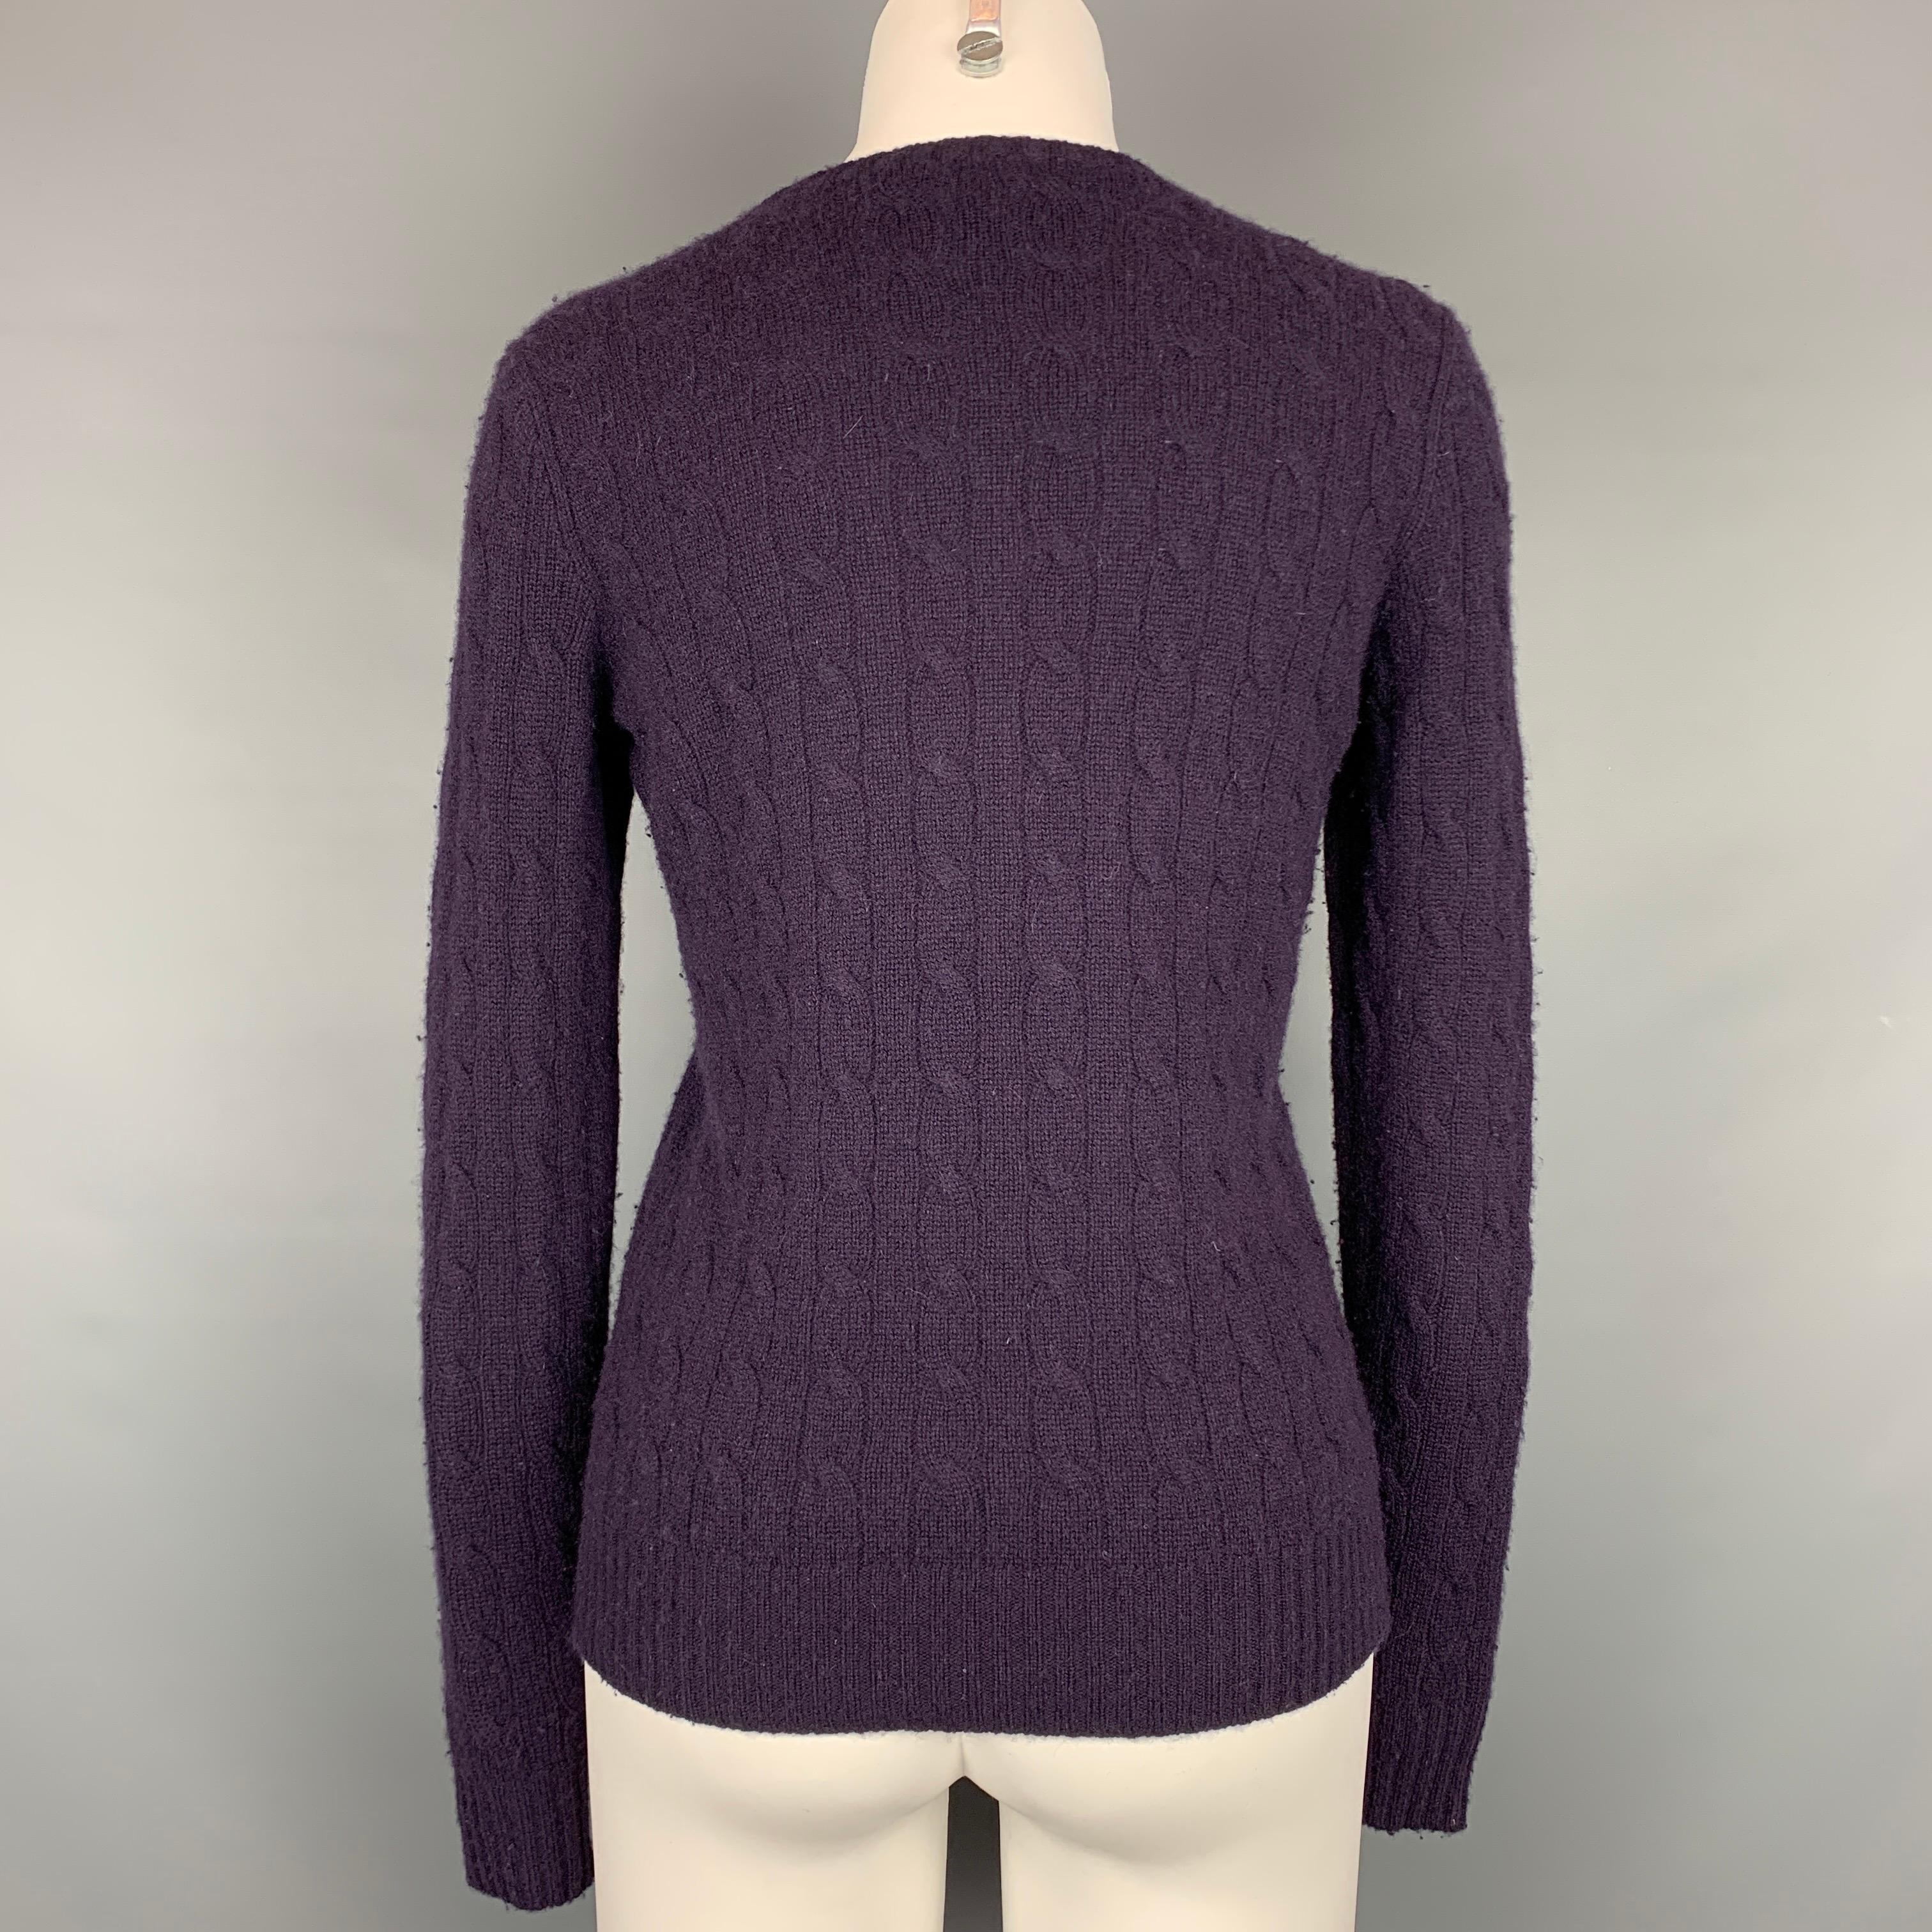 Women's RALPH LAUREN Black Label Size M Eggplant Cable Knit Cashmere Slim Fit Sweater